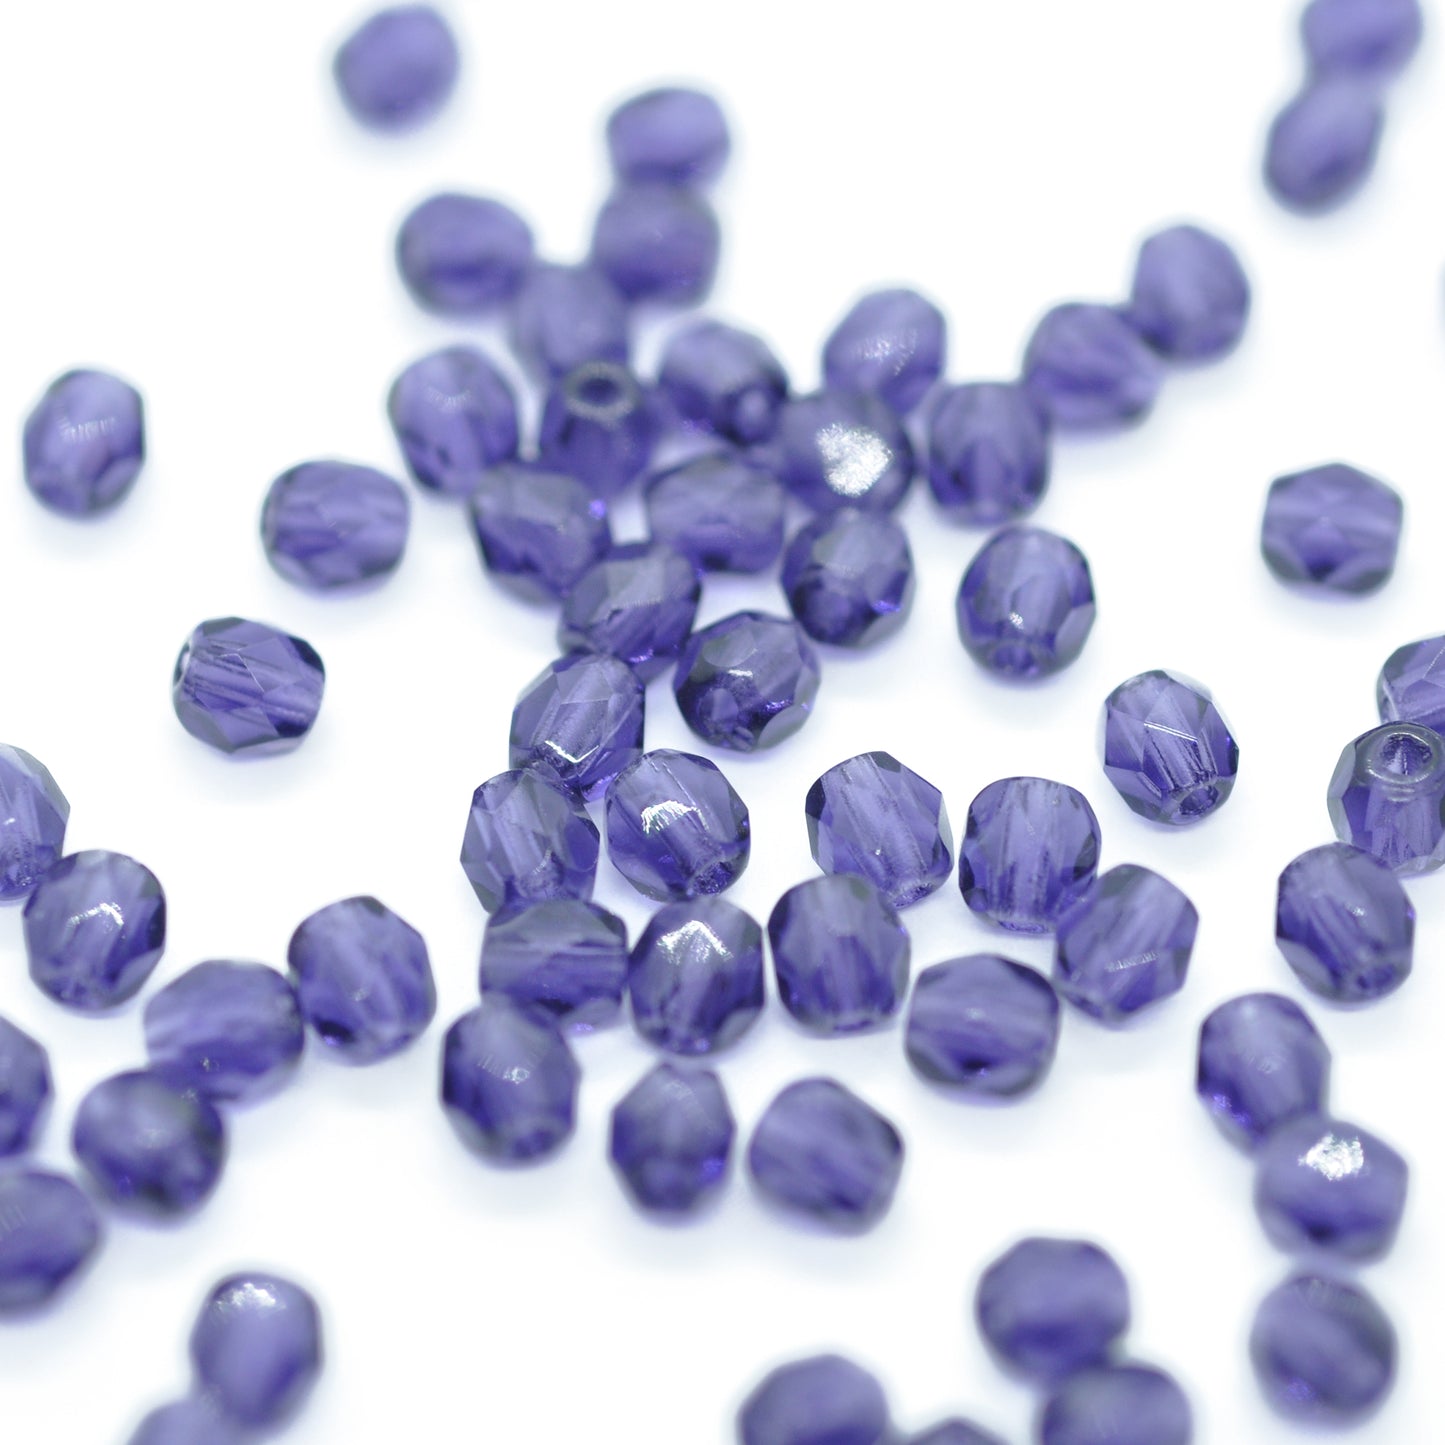 Preciosa Glasschliffperlen / purple / 100 Stk. / 4mm